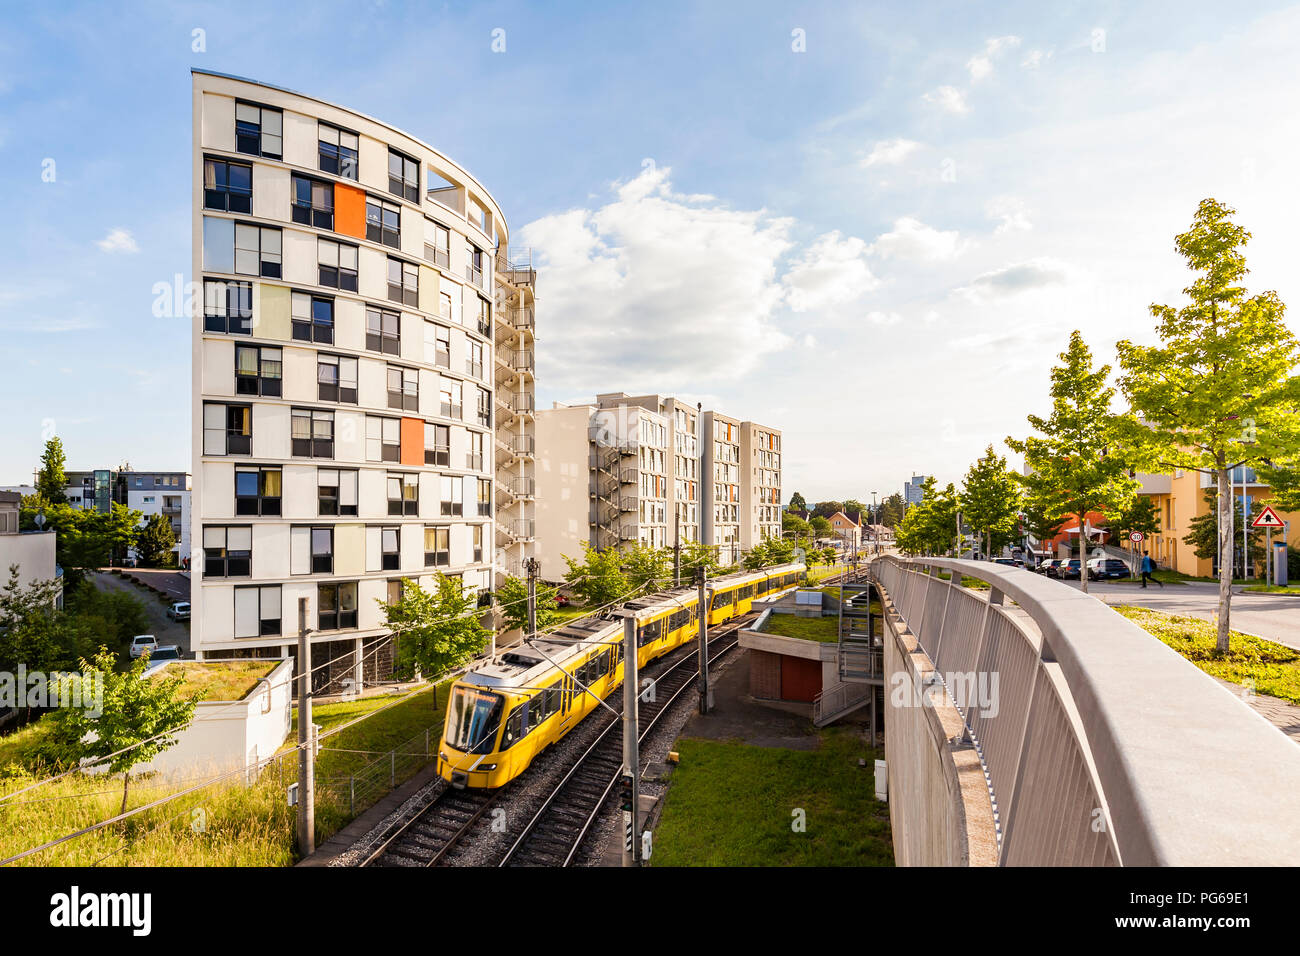 Alemania, Stuttgart, alto edificio residencial y el tranvía Foto de stock